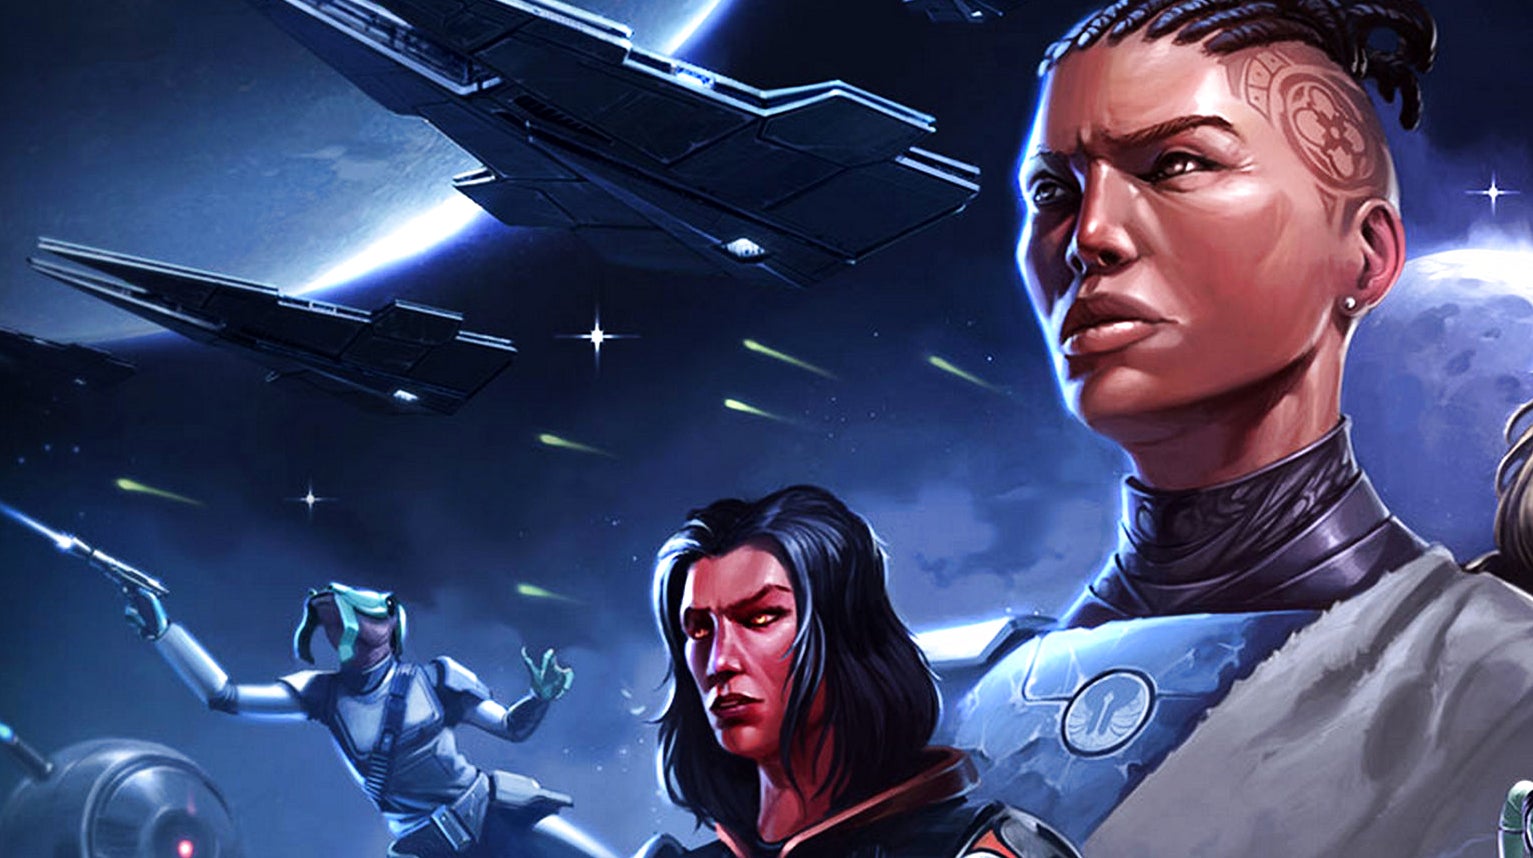 Bilder zu Legacy of the Sith erscheint doch erst 2022 für Star Wars: The Old Republic